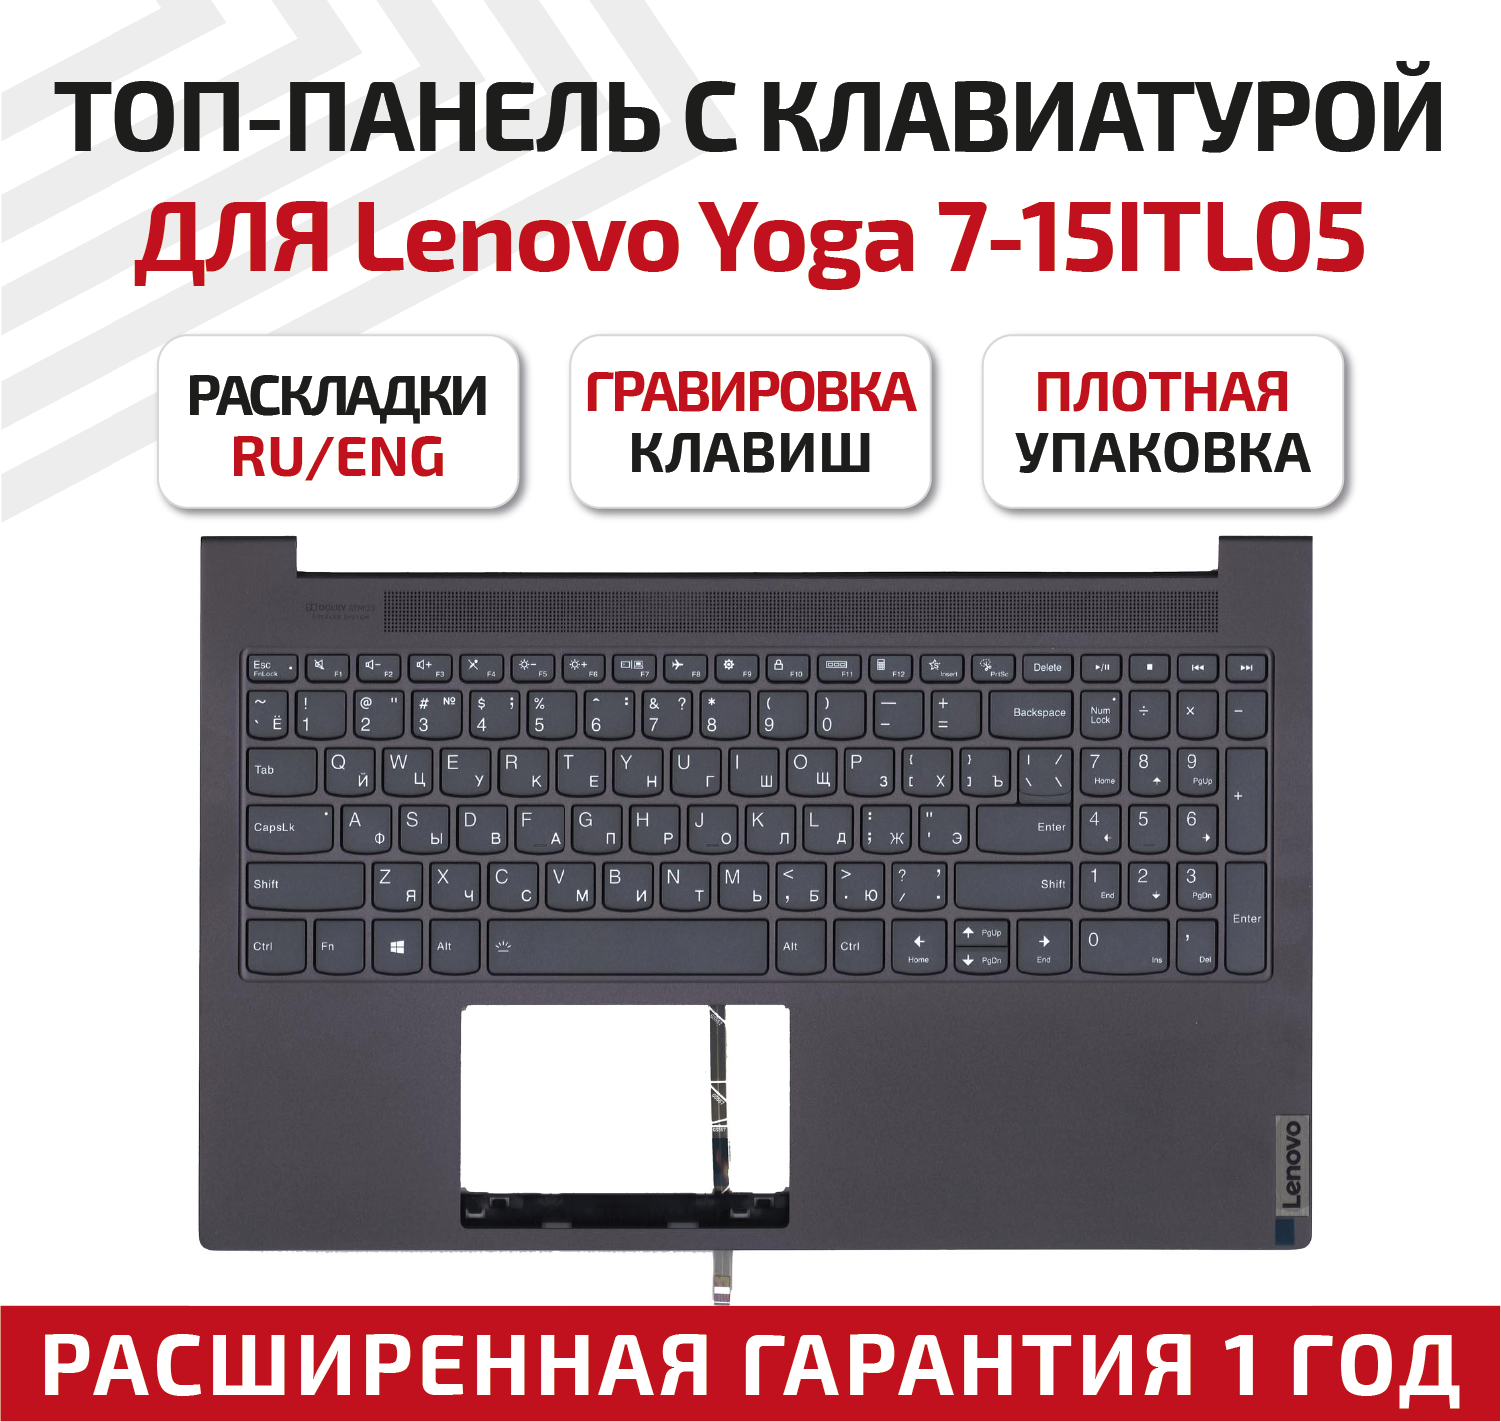 Клавиатура (keyboard) 5CB1B10131 для ноутбука Lenovo Yoga Slim 7-15ITL05, топкейс